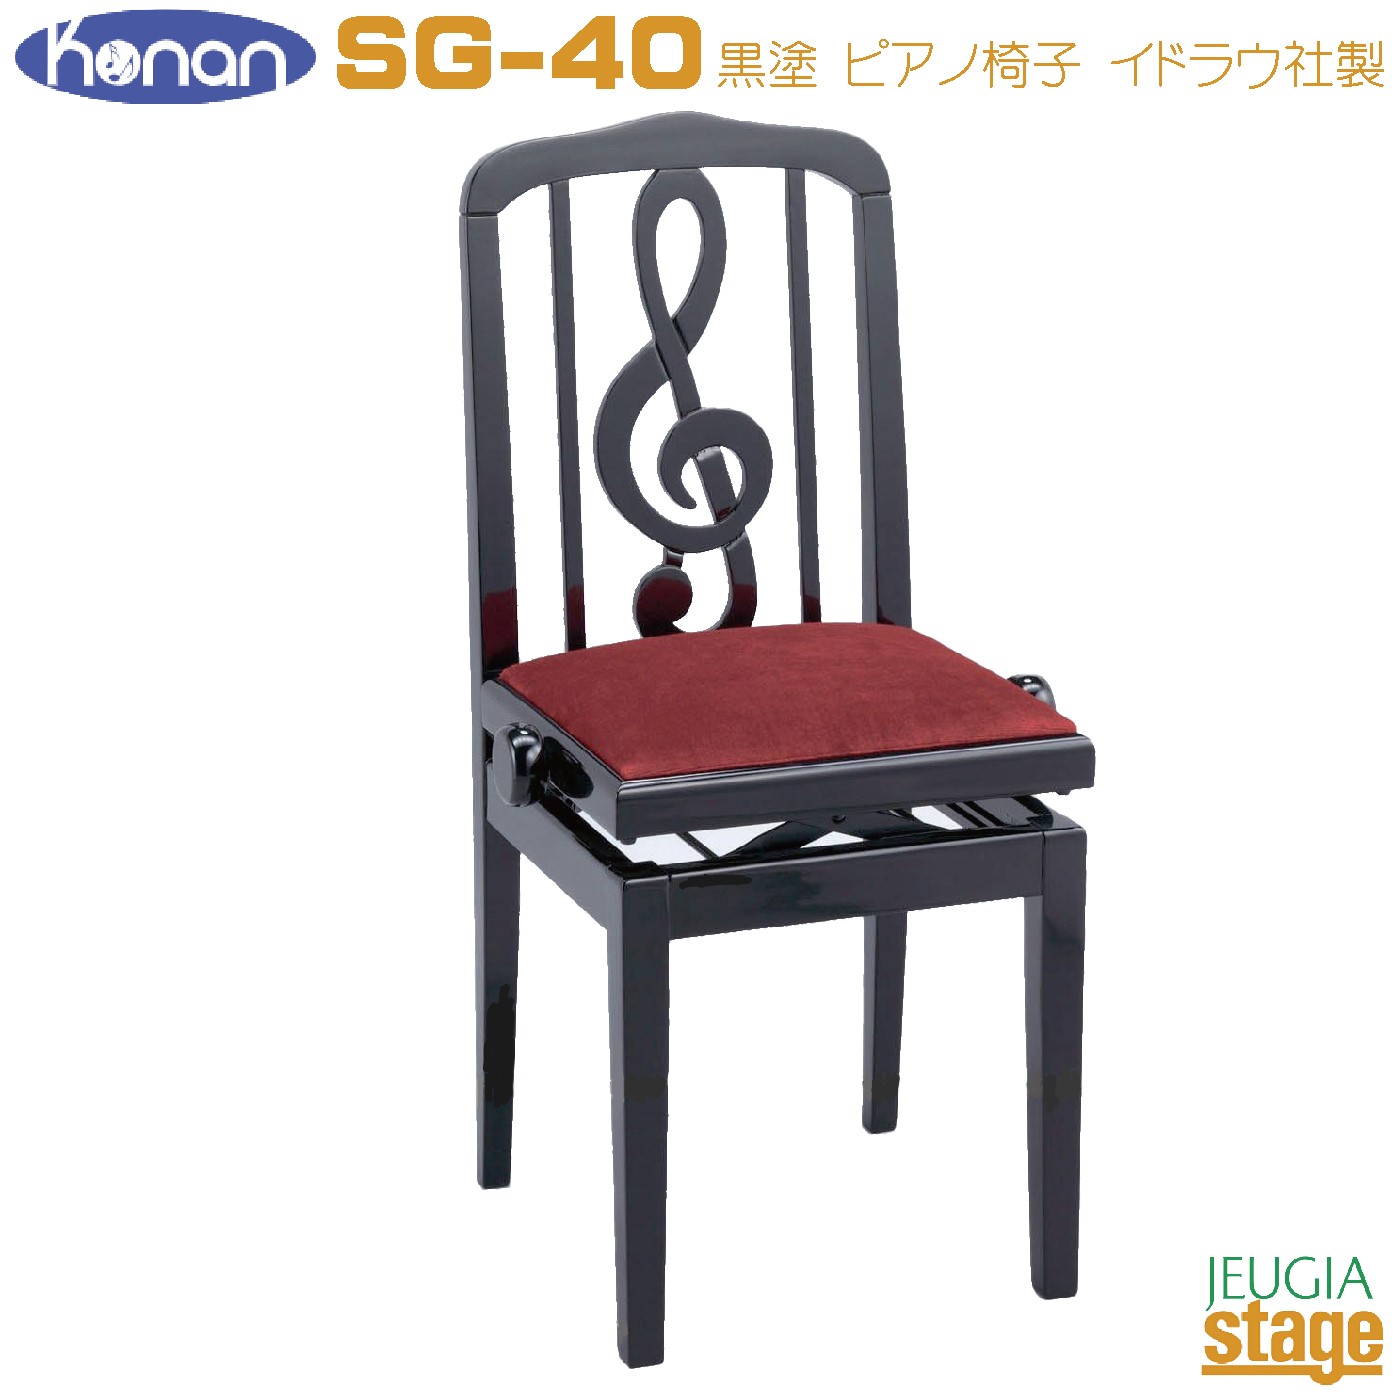 SG-40 ピアノ椅子 優れた耐久性・高品質なスペイン・イドラウ社製で、お洒落な音符をデザインをあしらった高級感のある背もたれ付きピアノ椅子です。 機能面でもエンジ座面部分はふち側迄きっちり取り付けられており、無段階ネジ式昇降の両側木製ハンドルを備えているのでラック式が苦手な方でも微調整を思い通りに決めることが出来るので大変使い易い構造になっています。 椅子本体はスタンダードな形ですので自宅レッスンのピアノ等にもしっくり馴染みます。 特徴 ■ふち側まで幅広くしっかり取り付けられたエンジ布座面！ ■信頼のであある高級椅子ブランドスペイン・イドラウ社製！ ■無段階ネジ式昇降の両側木製ハンドルにより微調整も可能な使い勝手の良さで操作もラクラク！ 仕様 ●サイズ/約W41xD35xH95cm(座部 約49.5～58.5cm) ●重量/約10kg ●無段階ネジ式昇降・両側木製ハンドル ●木製脚 ●スペイン・イドラウ社製 ●脚裏用フェルト付属 画像はサンプルです。 ★掲載の商品は店頭や他のECサイトでも並行して販売しております。在庫情報の更新には最大限の努力をしておりますが、ご注文が完了しましても売り切れでご用意できない場合がございます。 　また、お取り寄せ商品の場合、生産完了・メーカー価格改定などの理由でご用意できない場合がございます。 　その際はご注文をキャンセルさせていただきますので、予めご了承くださいませ。 ★お届け先が北海道や沖縄、その他離島の場合、「送料無料」と表記の商品であっても別途中継料や送料を頂戴いたします。その際は改めてご連絡を差し上げますのでご了承ください。